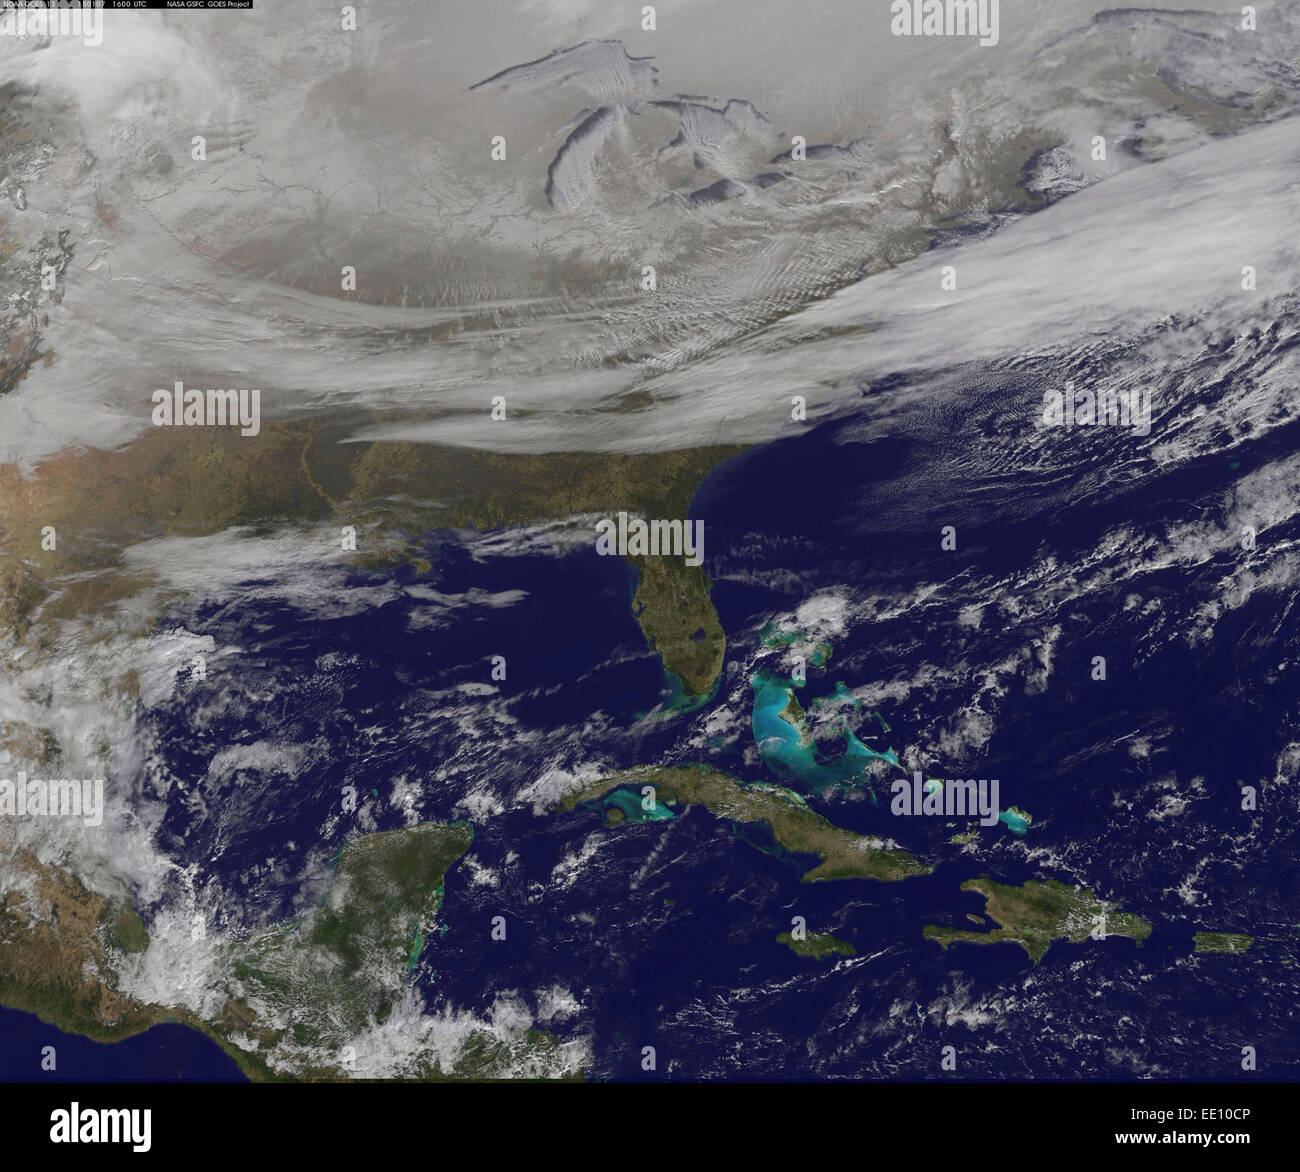 La NOAA GOES-East satellite fourni un regard sur les eaux glaciales de l'est de deux tiers des Américains le 7 janvier 2015, qui montre une couverture de neige du nord, la neige d'effet de lac provenant des Grands Lacs et les nuages derrière le front froid arctique. Le front froid qui a l'air arctique déplacé vers le sud jusqu'en Floride, et remonte au-dessus du golfe du Mexique et à l'ouest du Texas. L'image montre les nuages derrière la limite frontale qui s'étend de la Caroline du Nord Ouest sur le terroir. Plus au nord, une large bande de neige recouvre le sol à partir de la Nouvelle Angleterre à l'ouest du Montana, avec des rivières apparaissant comme les veines. Banque D'Images